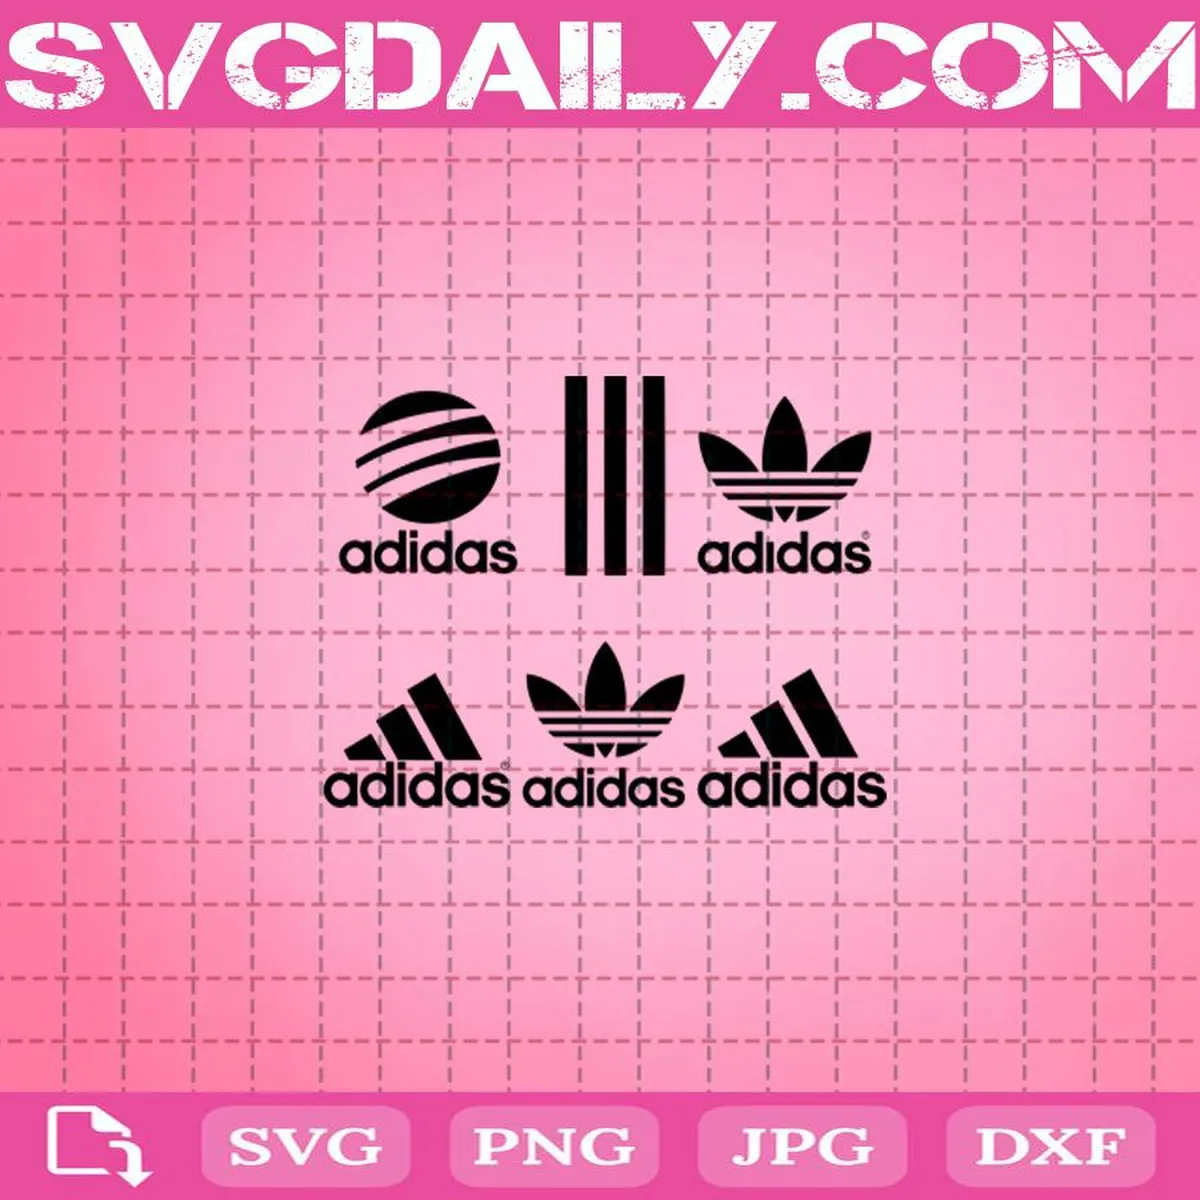 Adidas Svg, Adidas Logo Bundle Svg, Adidas Logo Svg, Adidas Cut File Svg, Adidas Logo Cut File Svg, Adidas Instant Download